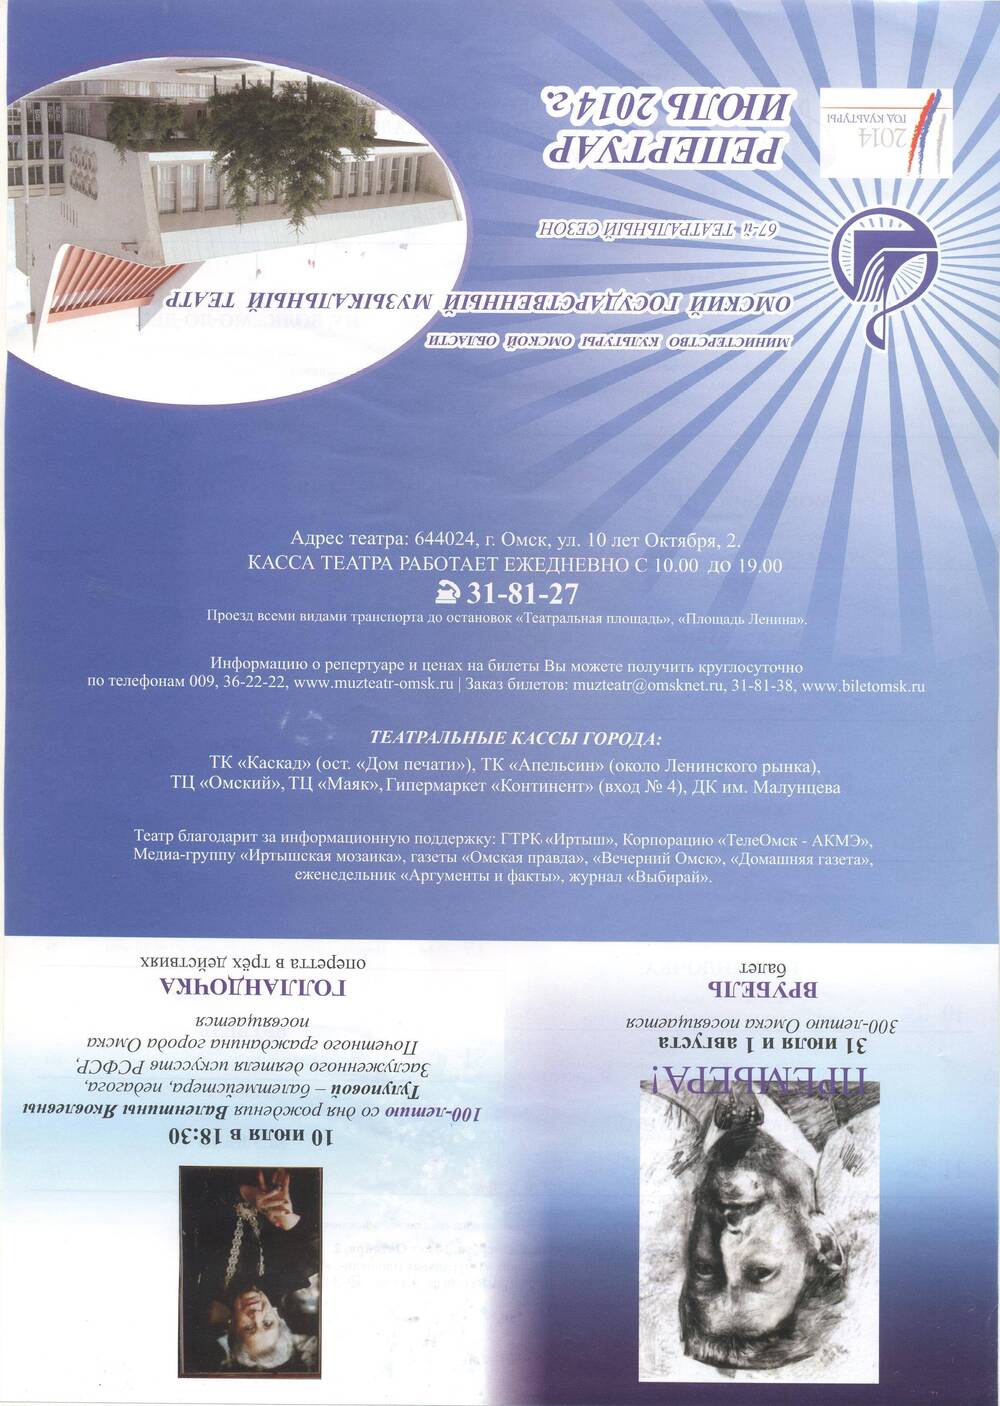 Репертуарный лист на июль 2014 г.  Омский музыкальный театр.